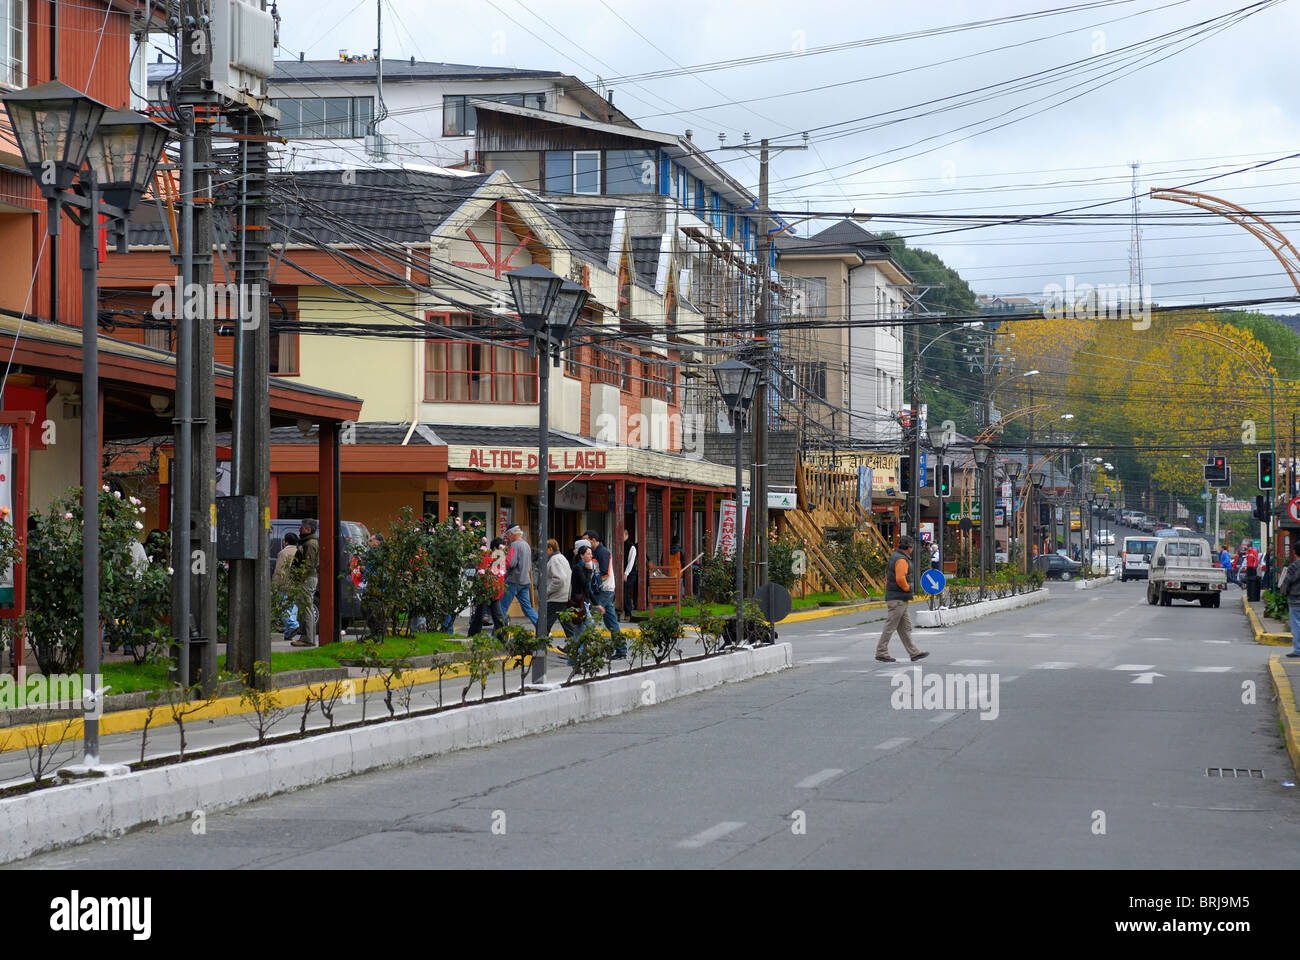 Calles de Puerto Varas, Patagonia Chilena ciudad de la región de los Lagos, Chile Foto de stock